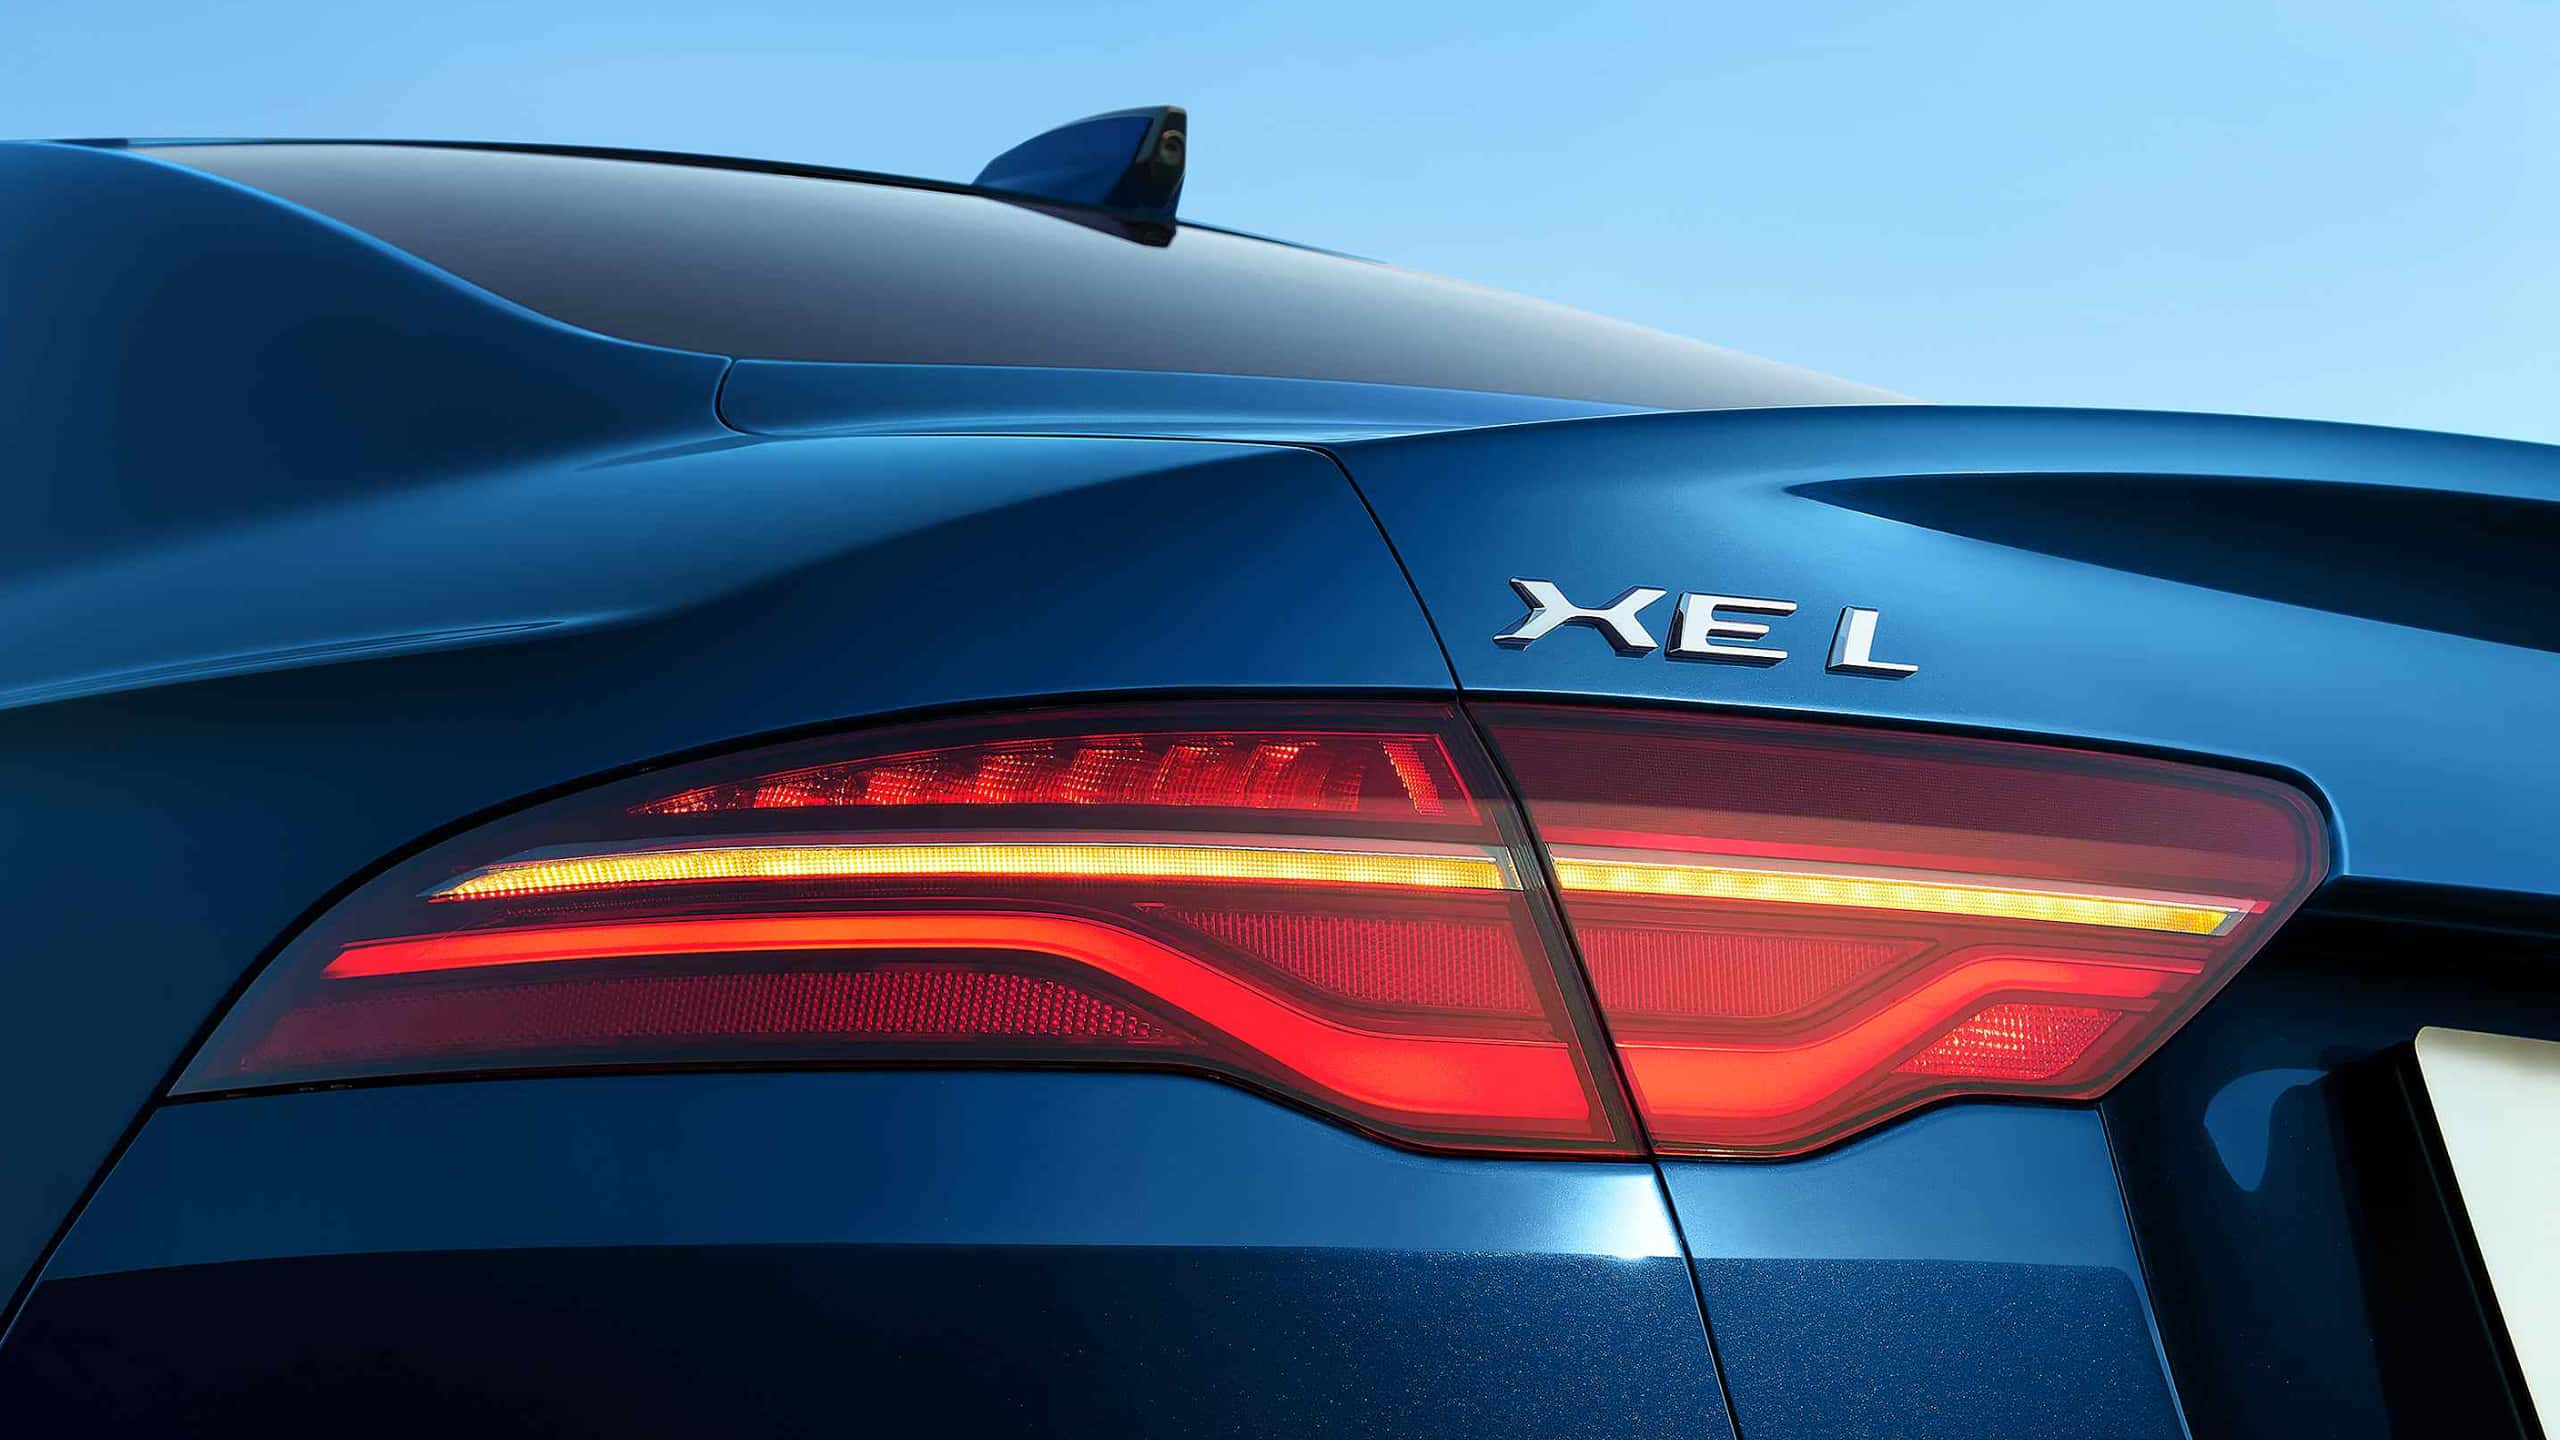 Jaguar XEL back view